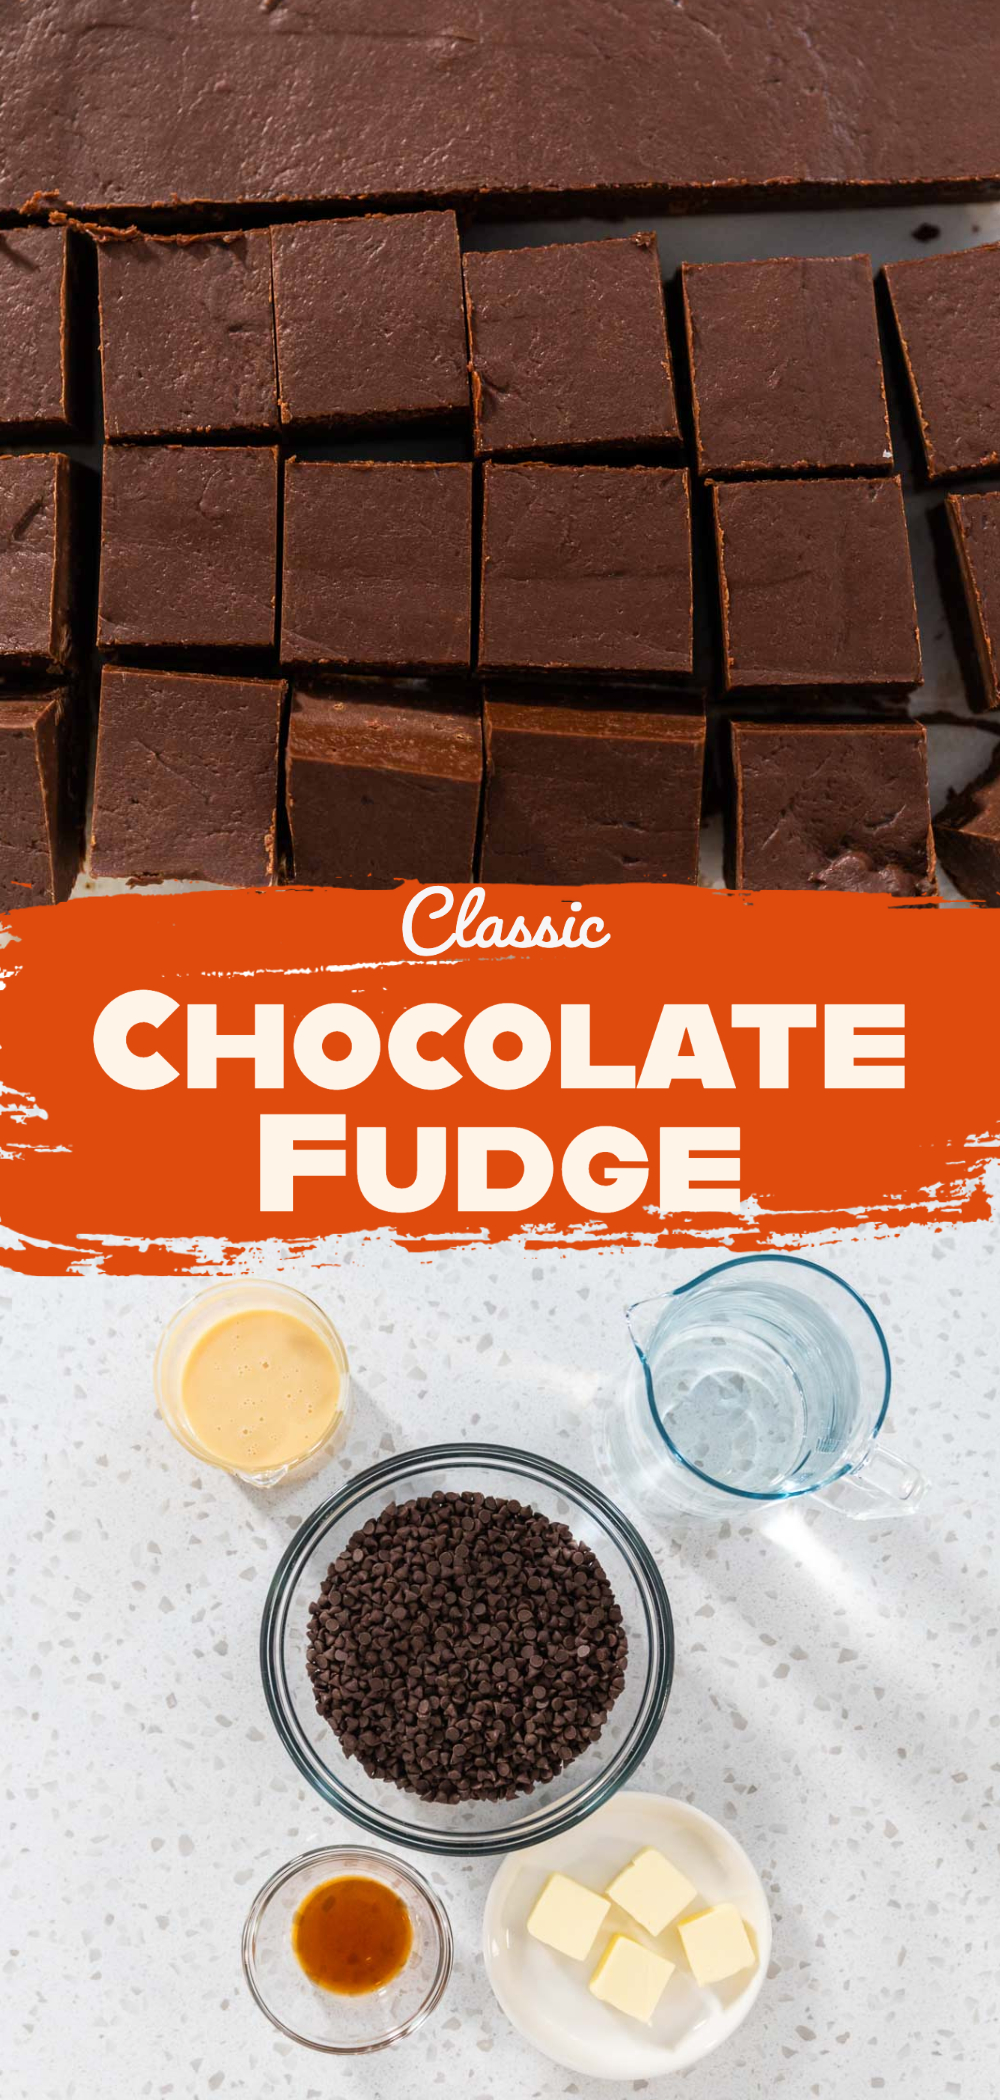 Classic Chocolate Fudge